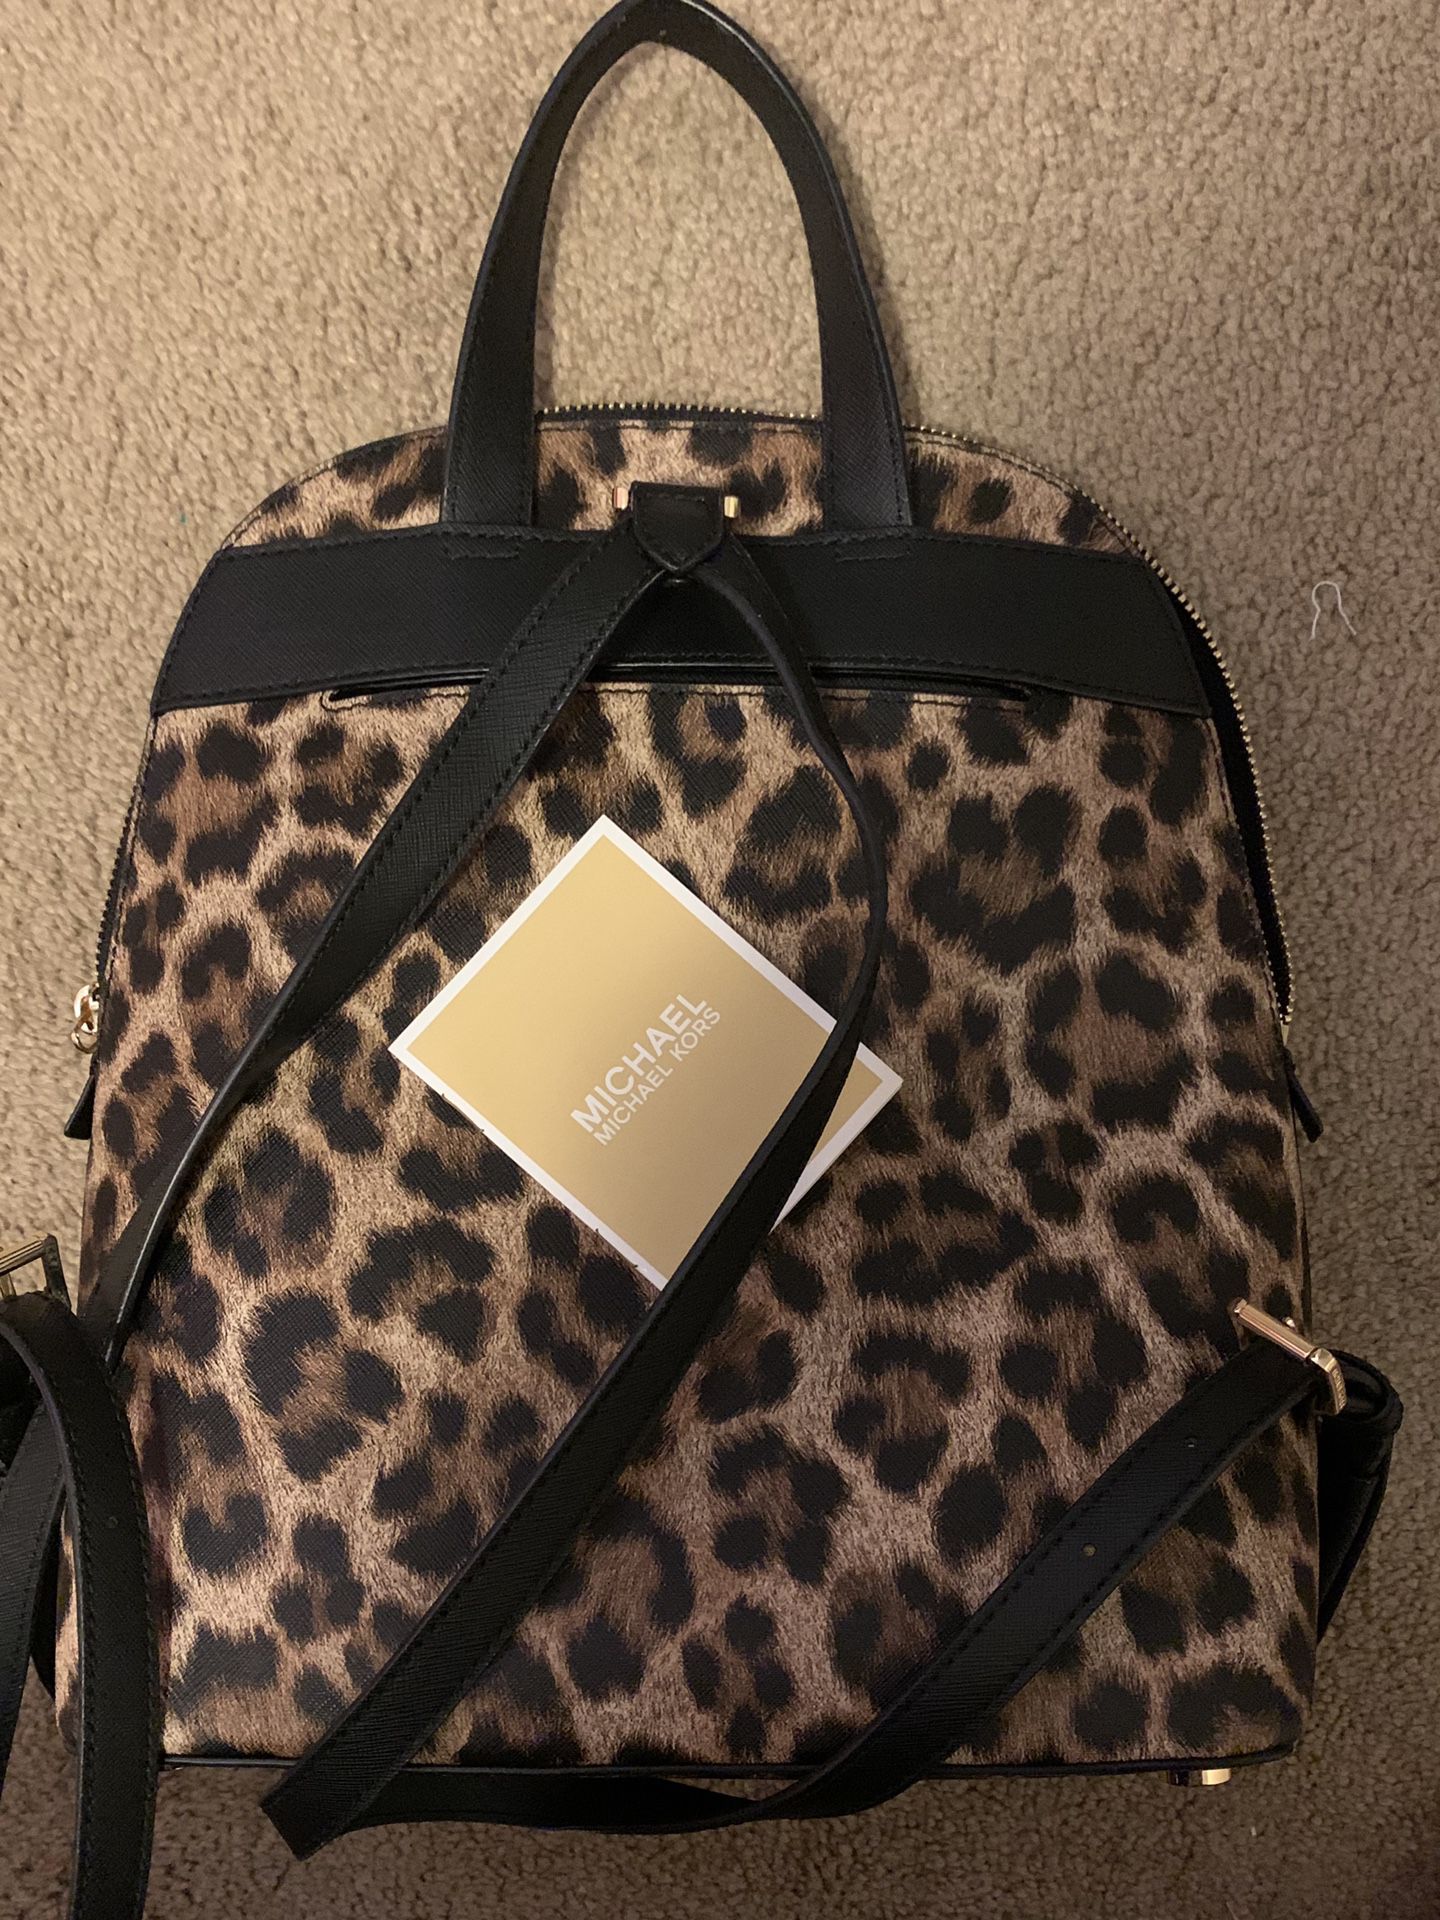 Michael Kors Animal Print Backpack